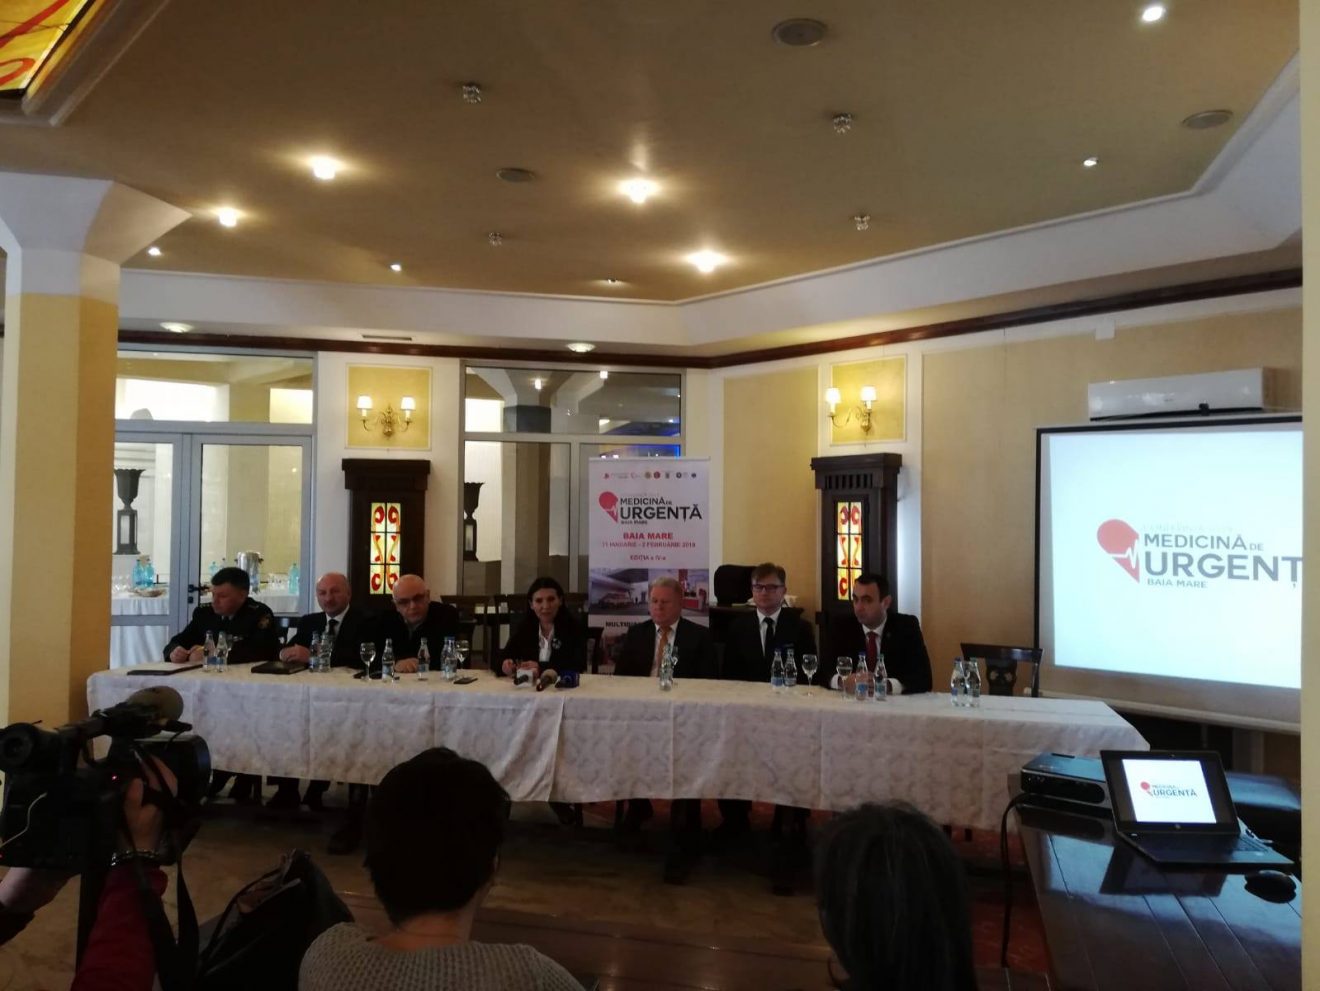 Conferința ”Medicina de urgență azi”, în Baia Mare: ce a spus ministrul Sorina Pintea despre investițiile în sănătate